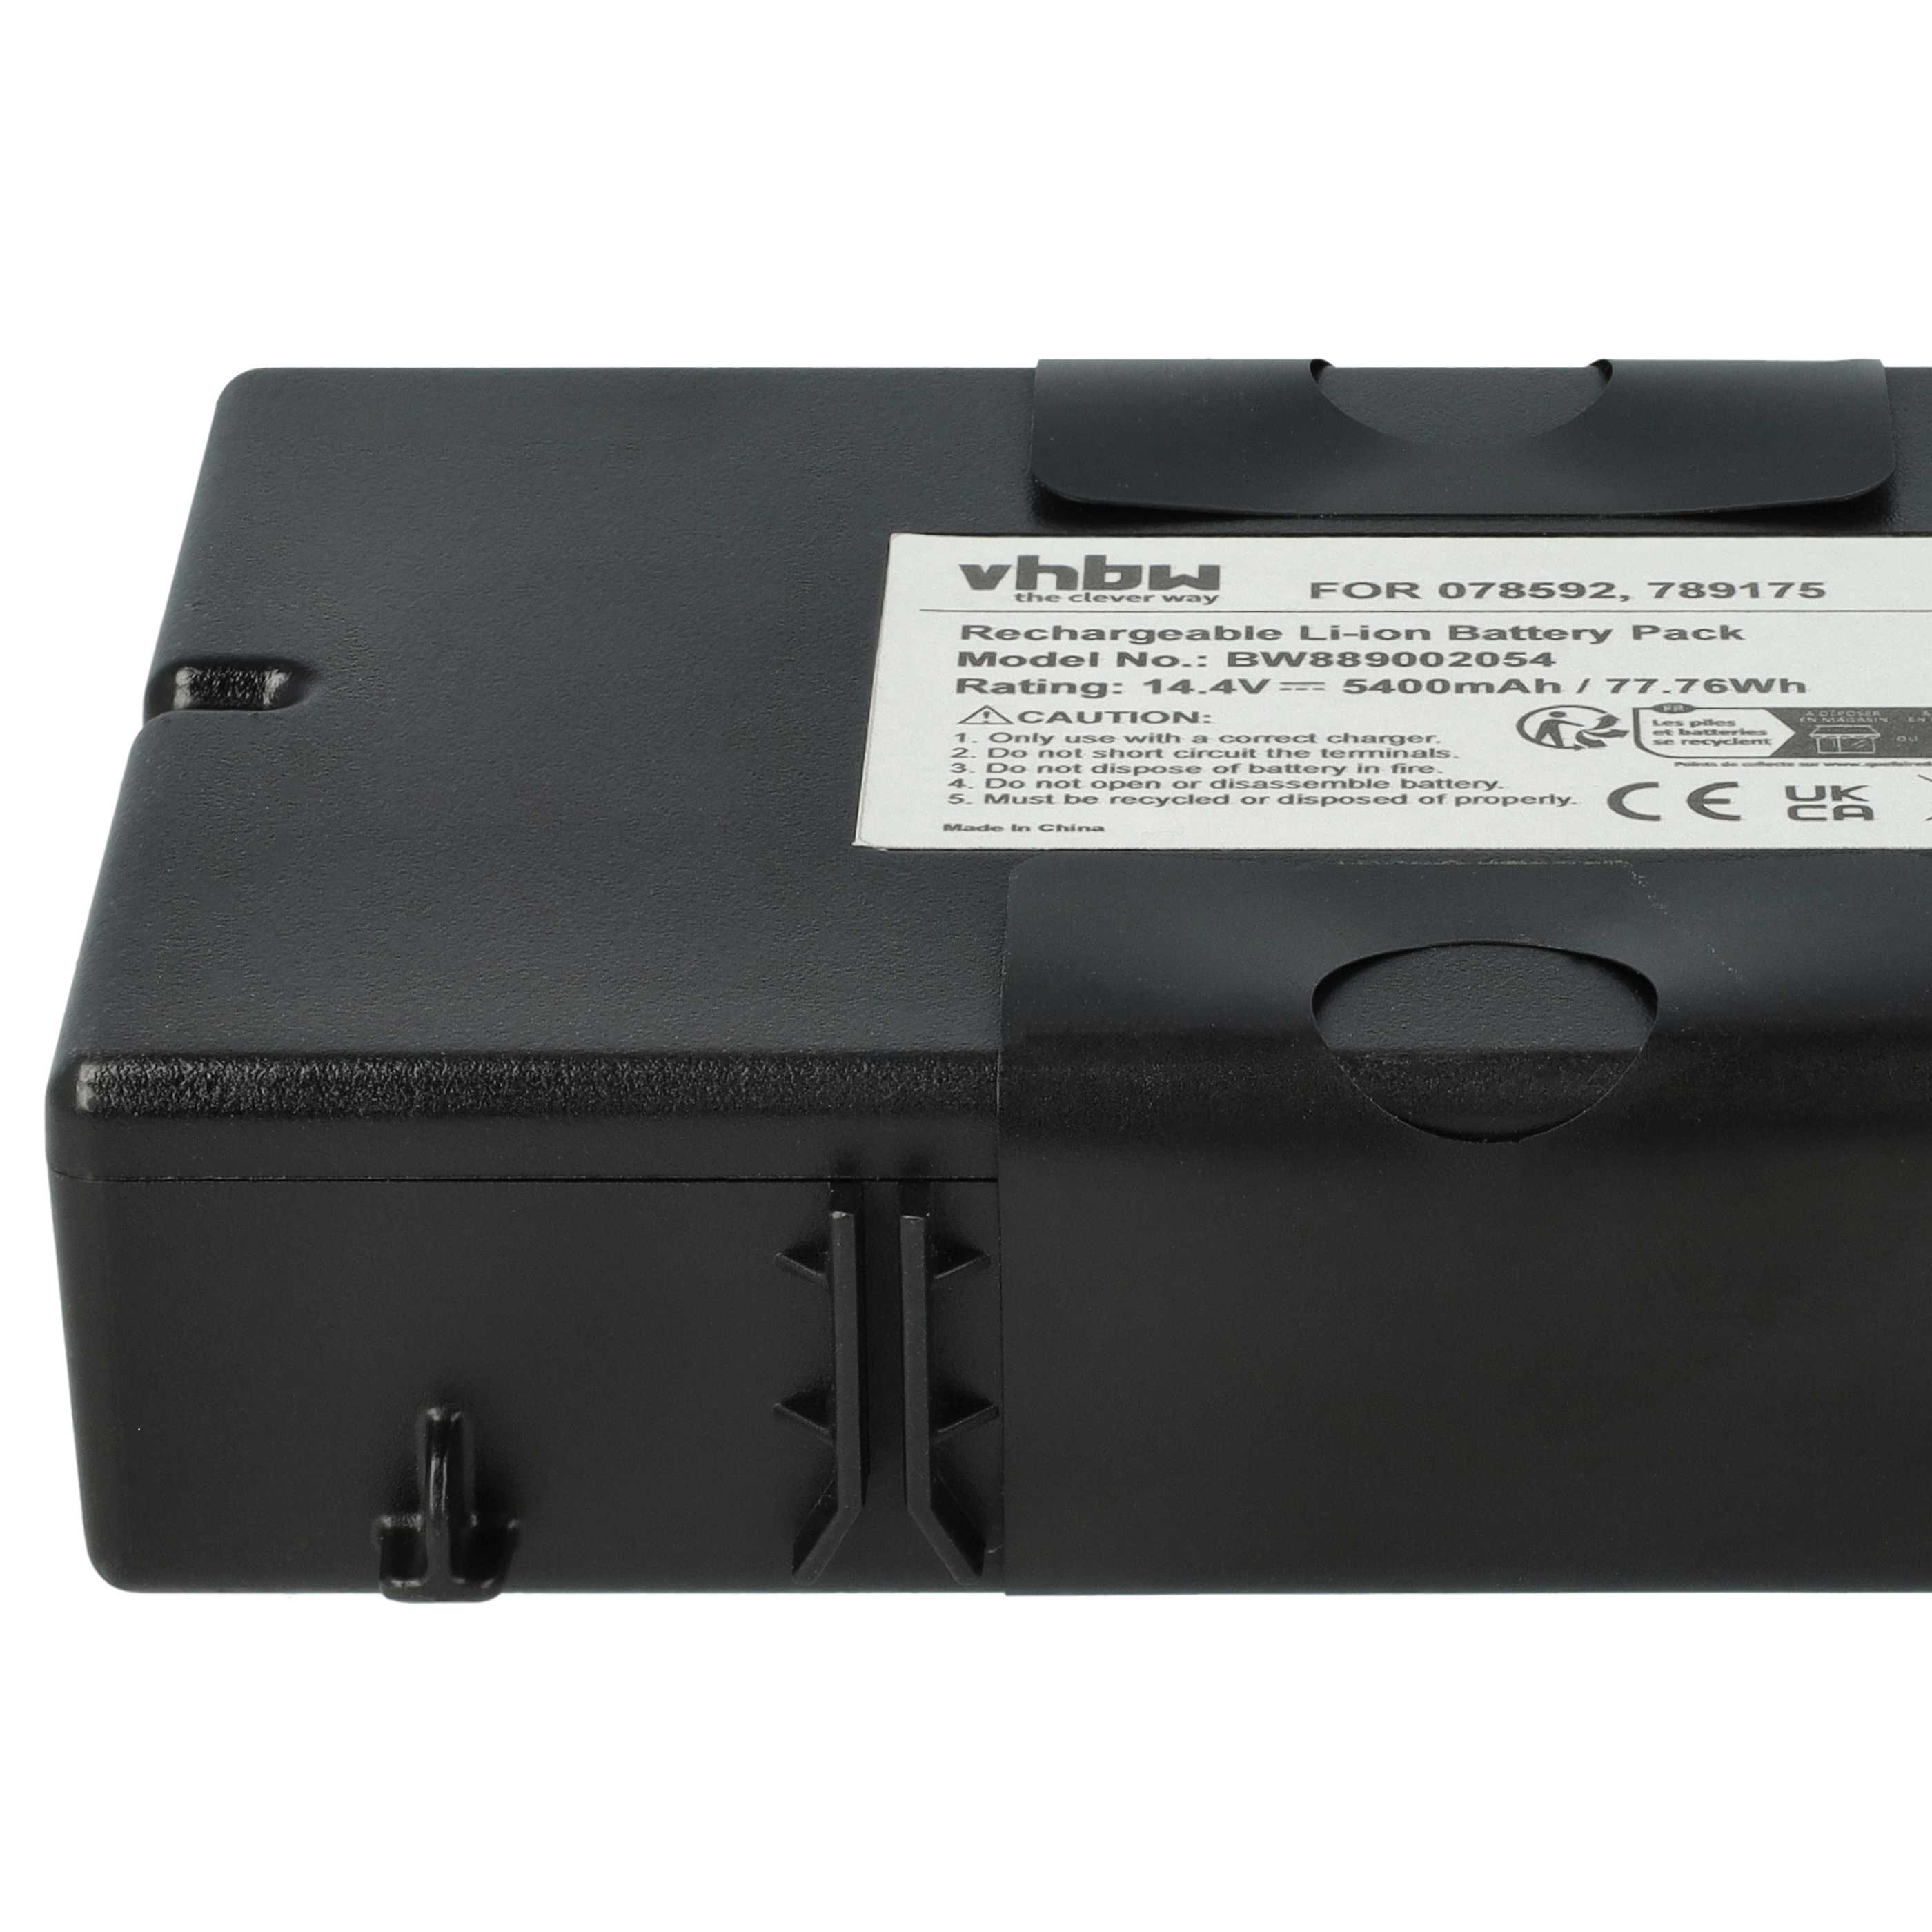  Battery replaces Bose 789175, 7891750010, 078592 for BoseLoudspeaker - Li-Ion 5400 mAh